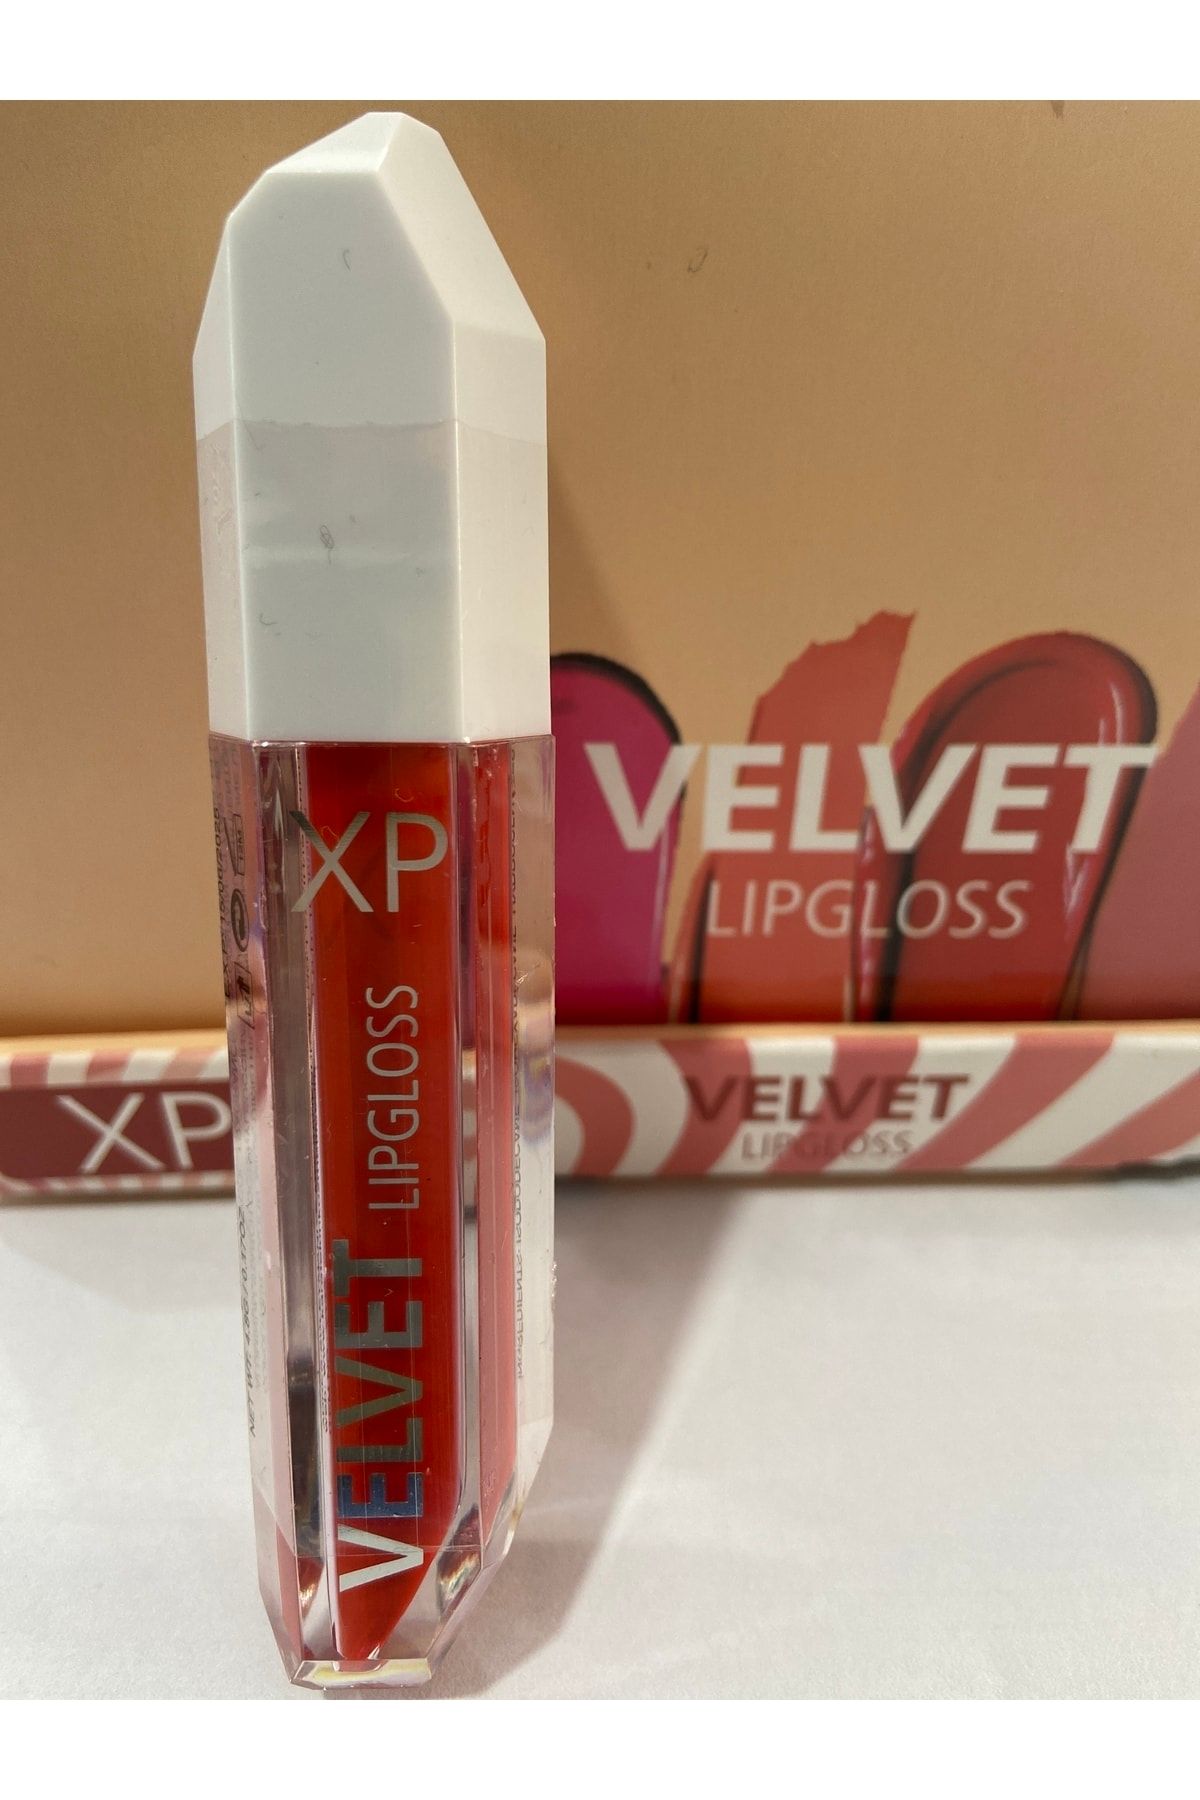 xp Velvet Lipgloss 06